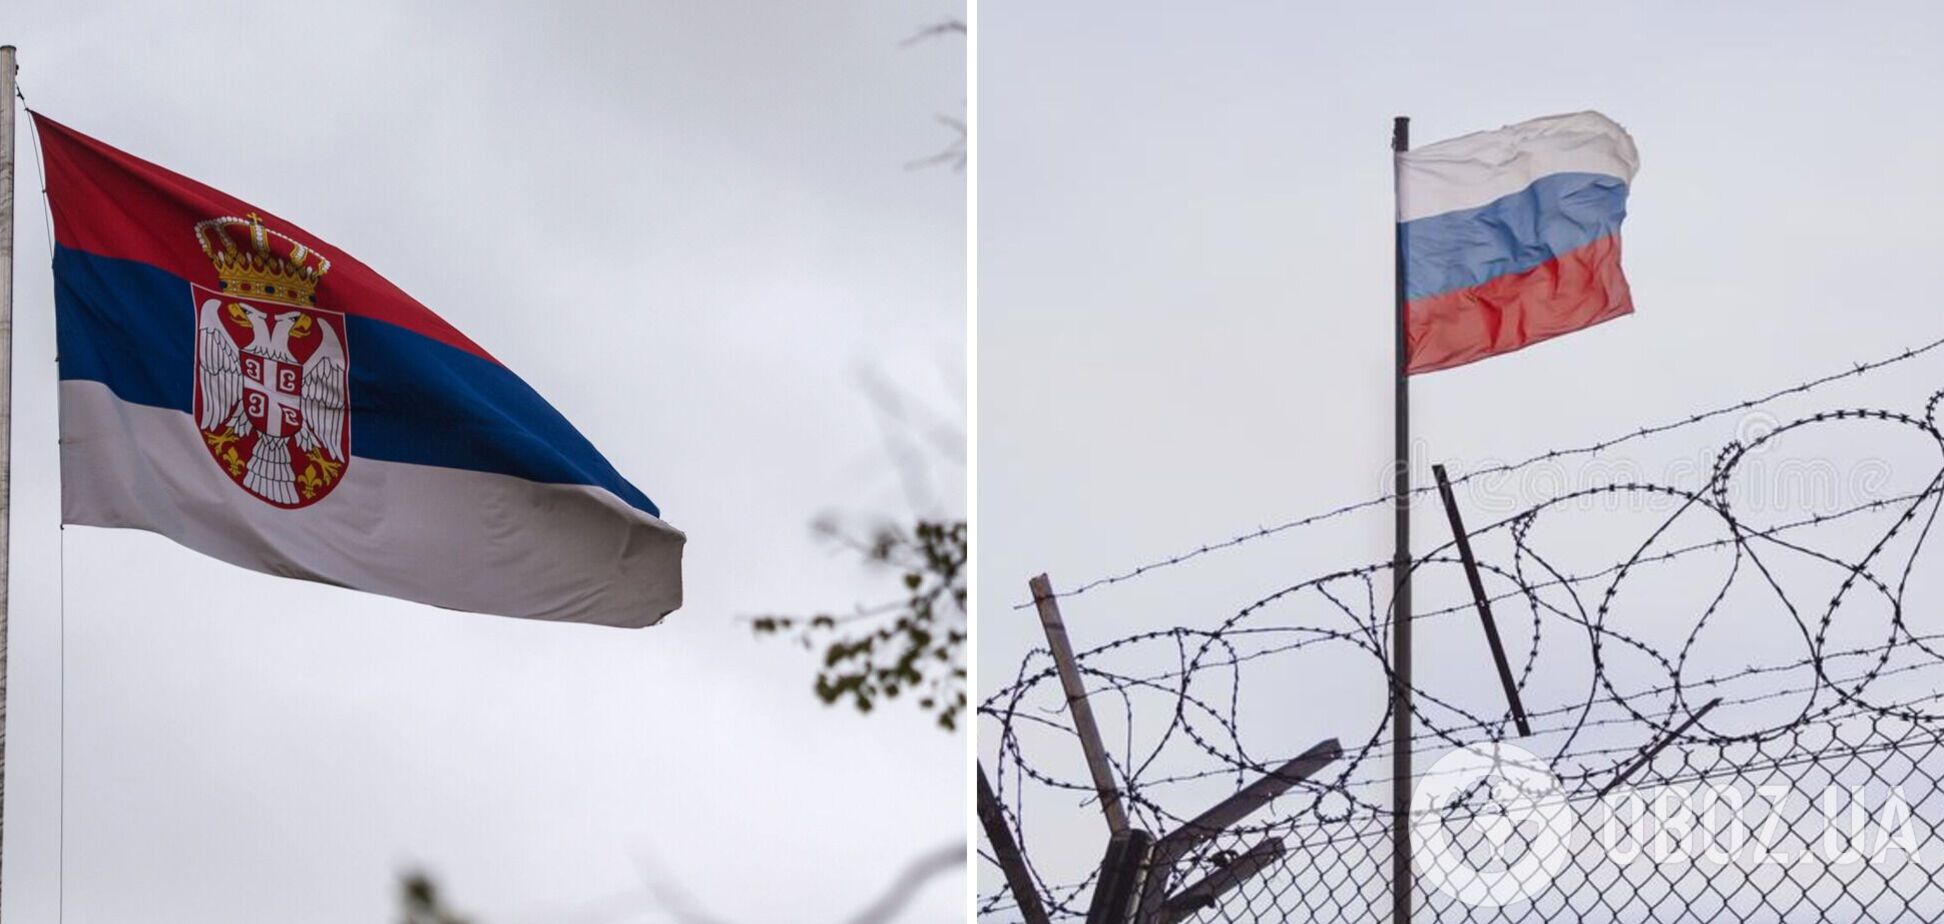 Сербия расширяет военное и гражданское сотрудничество с Россией: подписали новый меморандум